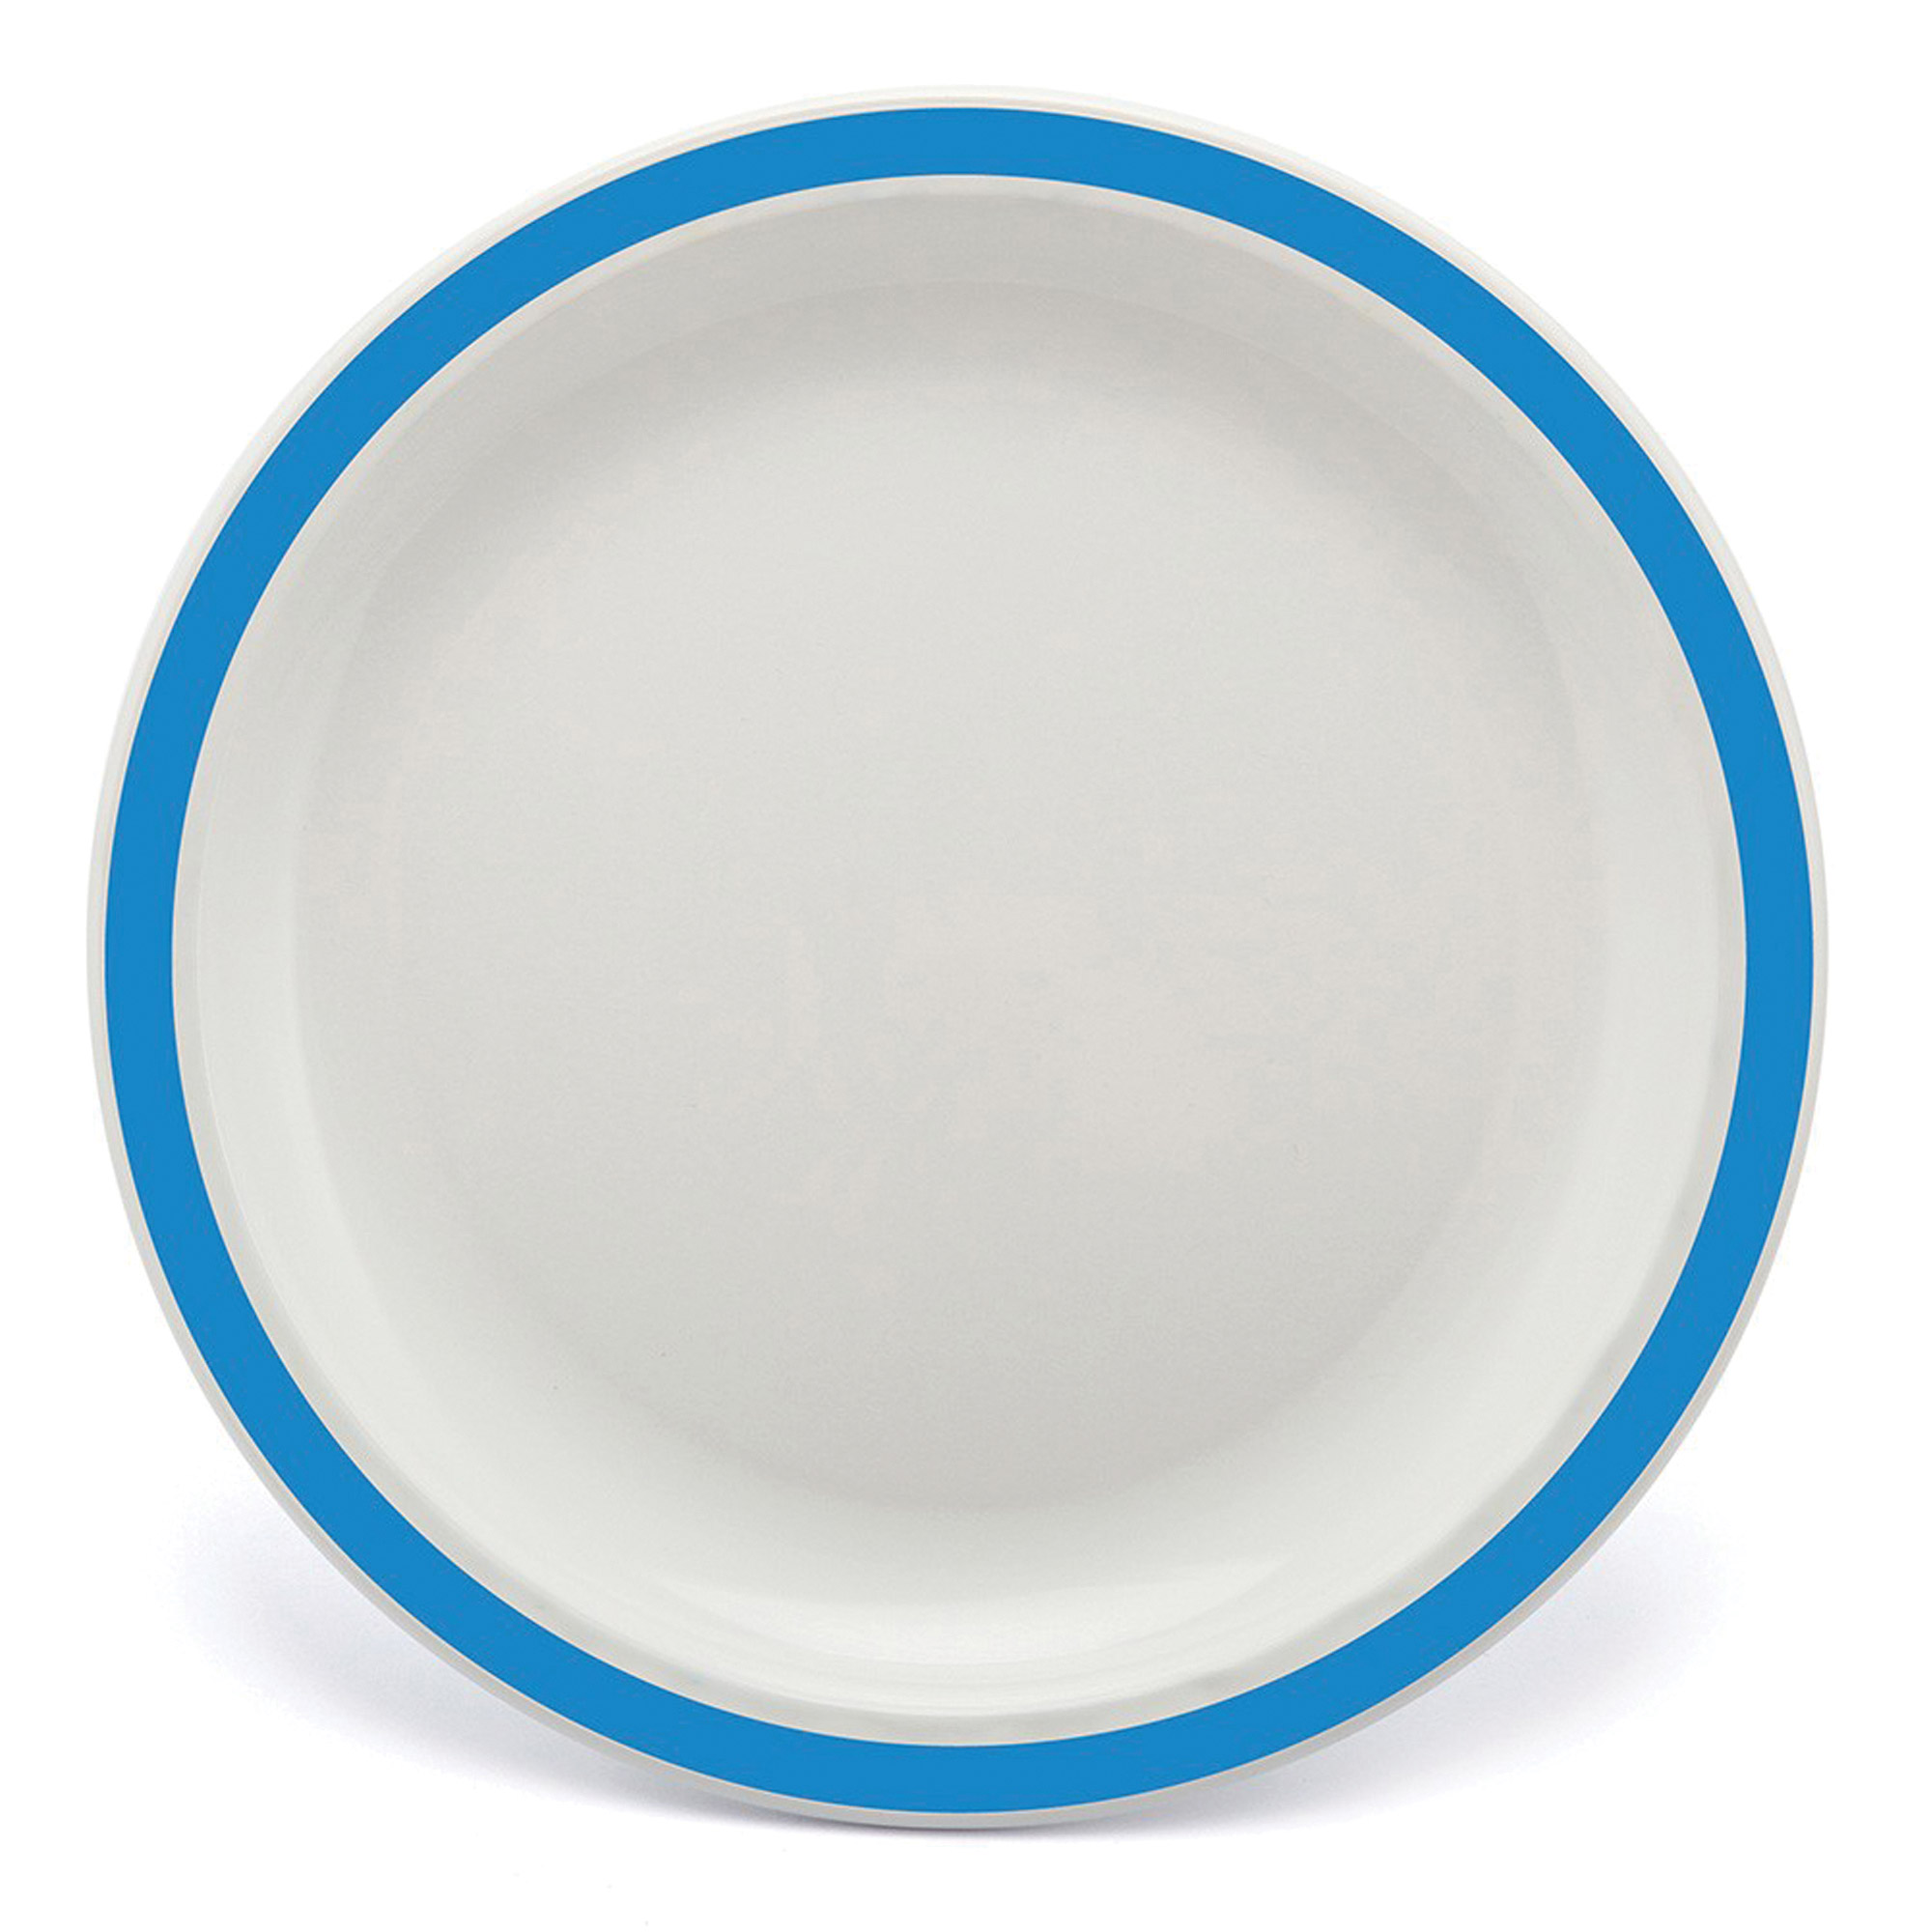 Polycarb White Dinner Plate Narrow Med Blue Rim 23cm - Each